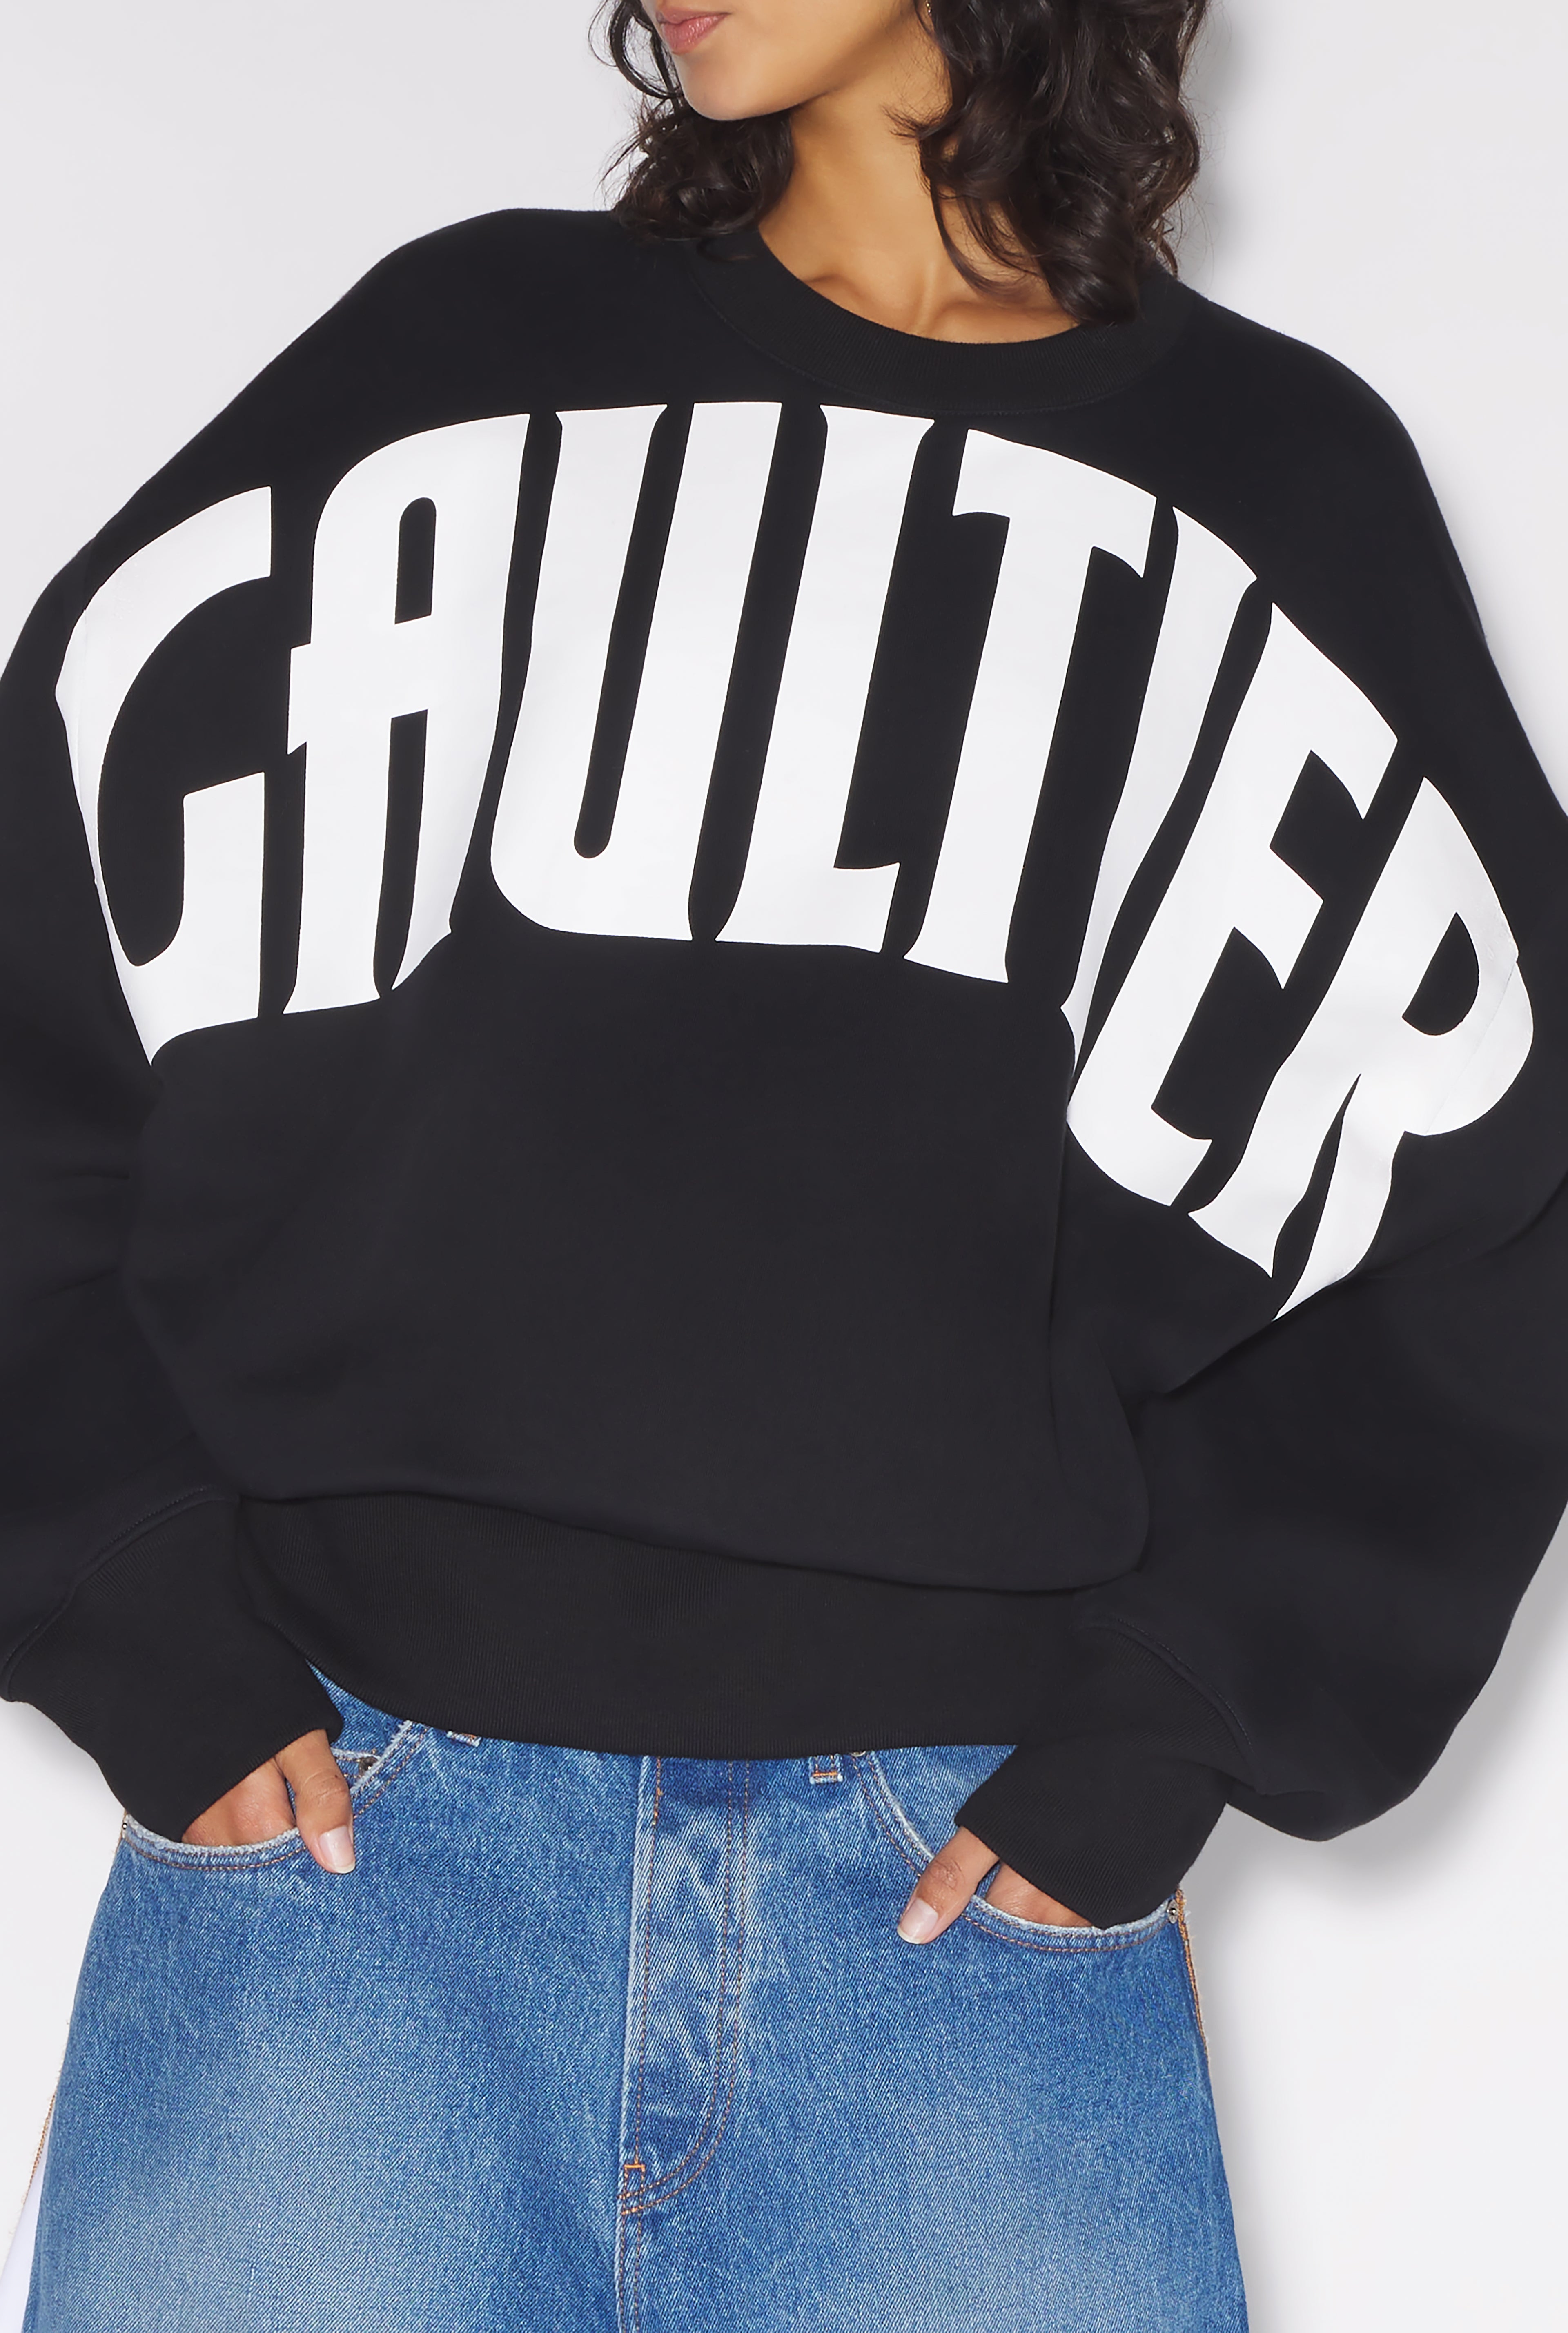 The Black Gaultier Sweatshirt